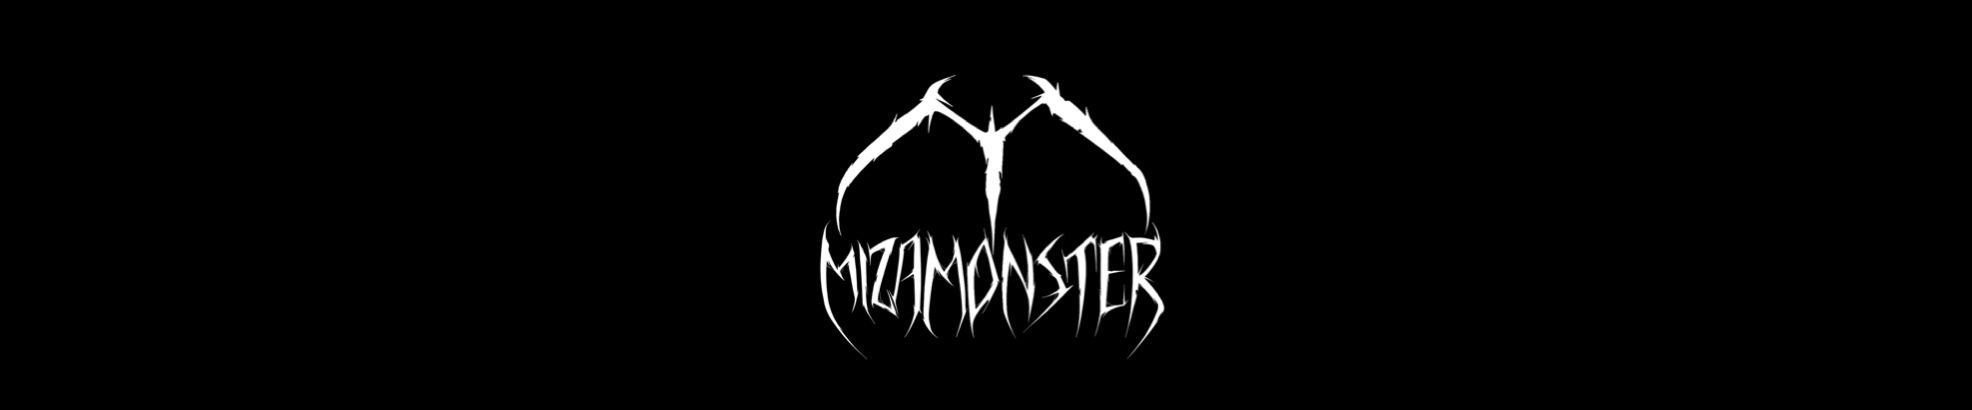 Miza Monster のプロファイルバナー